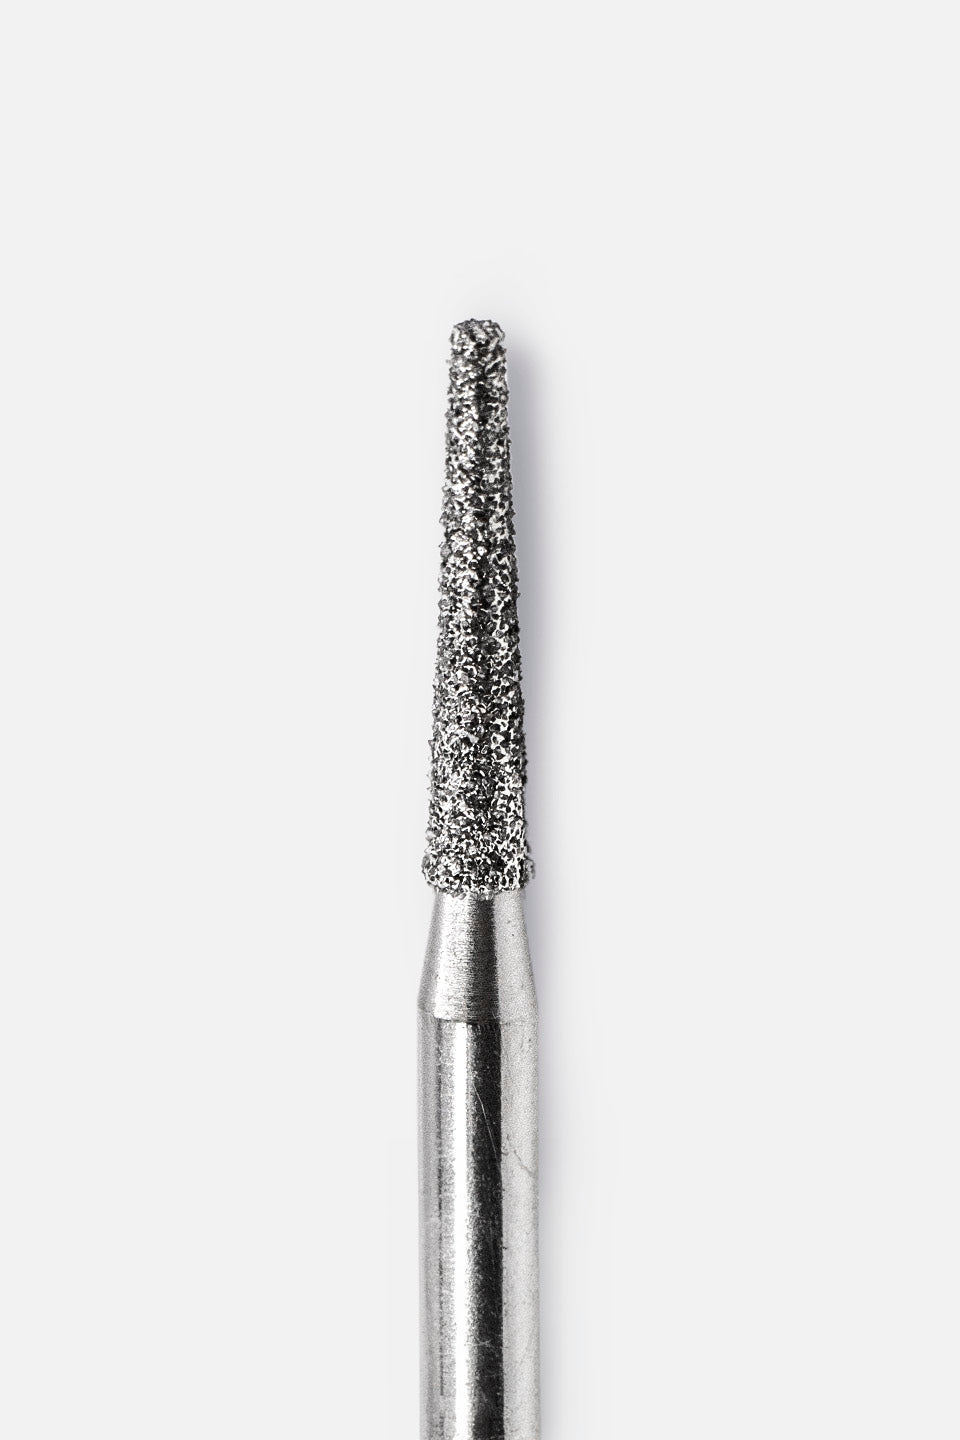 Fresa micromotor de diamante cónica larga gr. medio